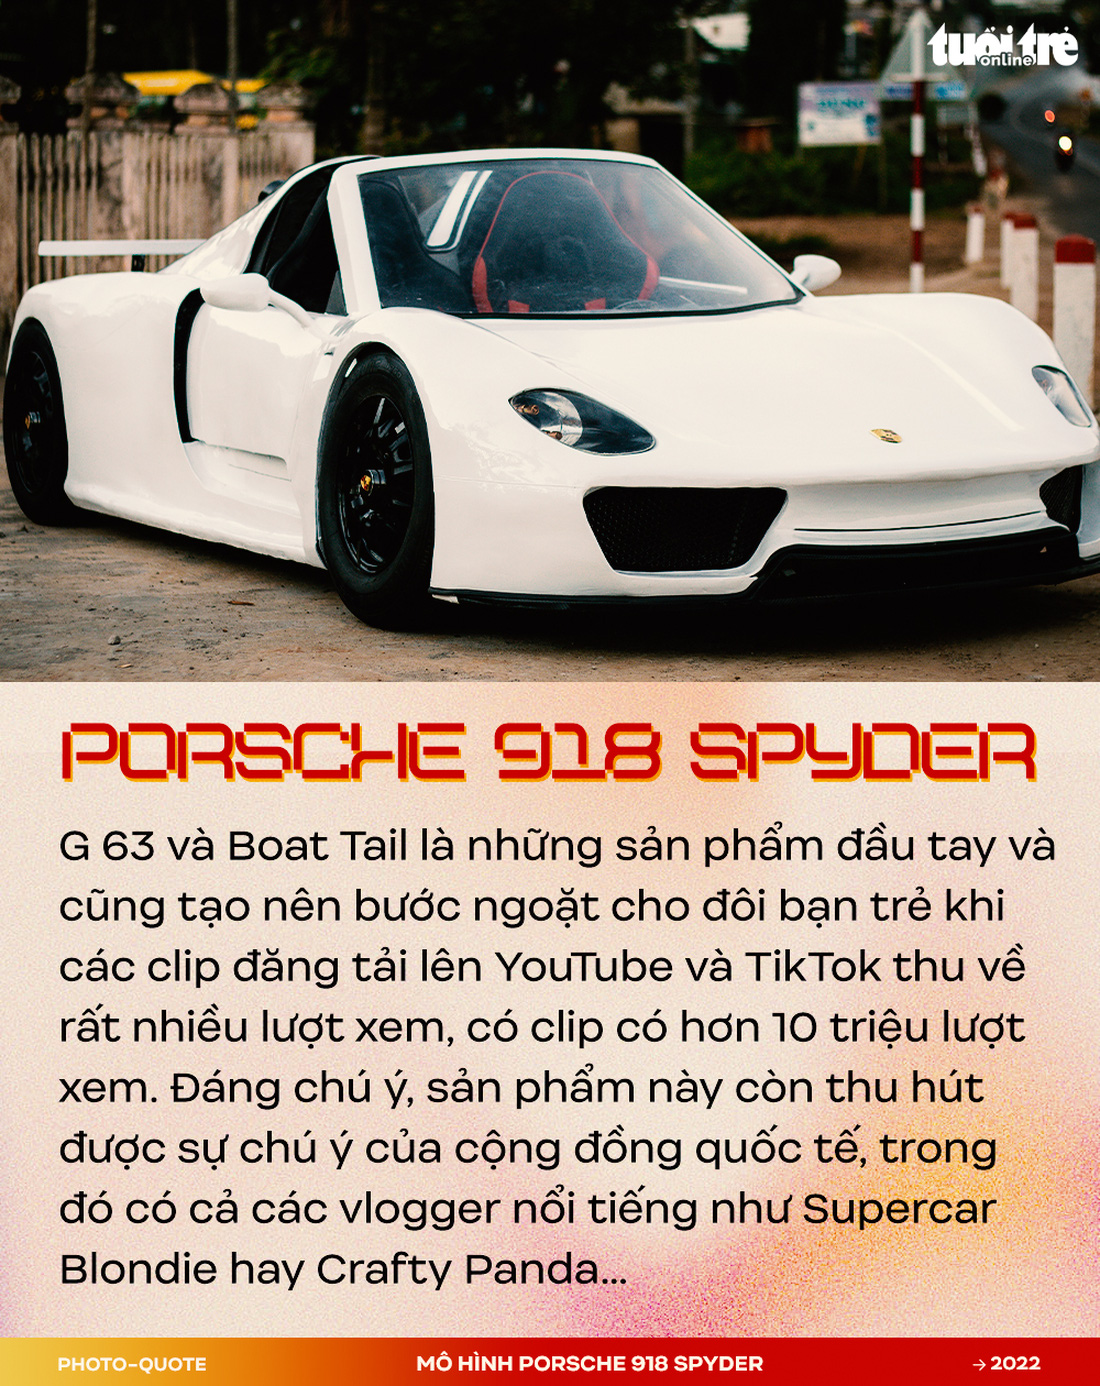 Đôi bạn 9X Tây Nguyên làm mô hình Porsche 918 Spyder gây sốt cộng đồng quốc tế - Ảnh 3.